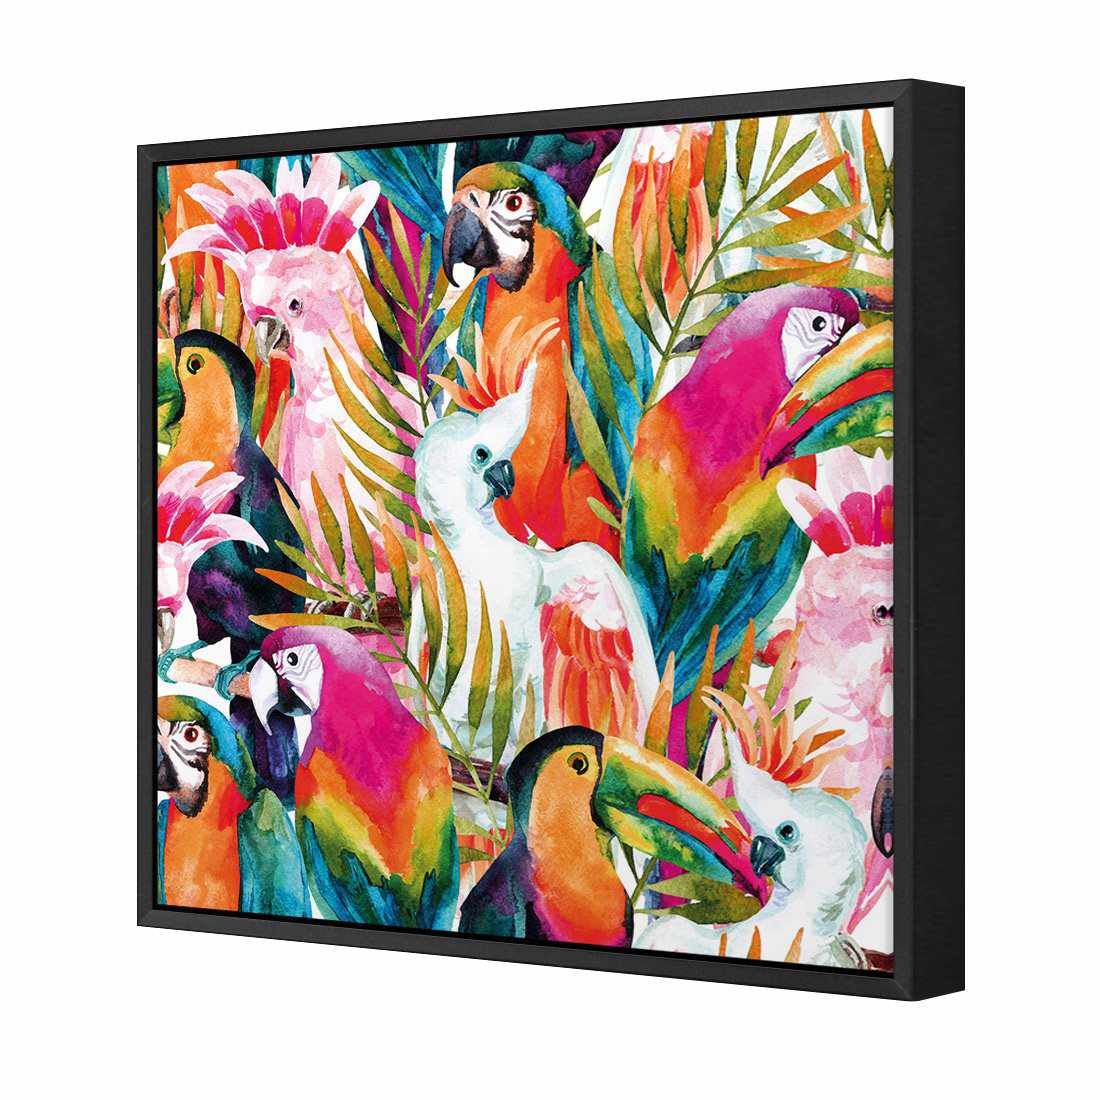 Parrots & Palms, Square Canvas Art-Canvas-Wall Art Designs-30x30cm-Canvas - Black Frame-Wall Art Designs